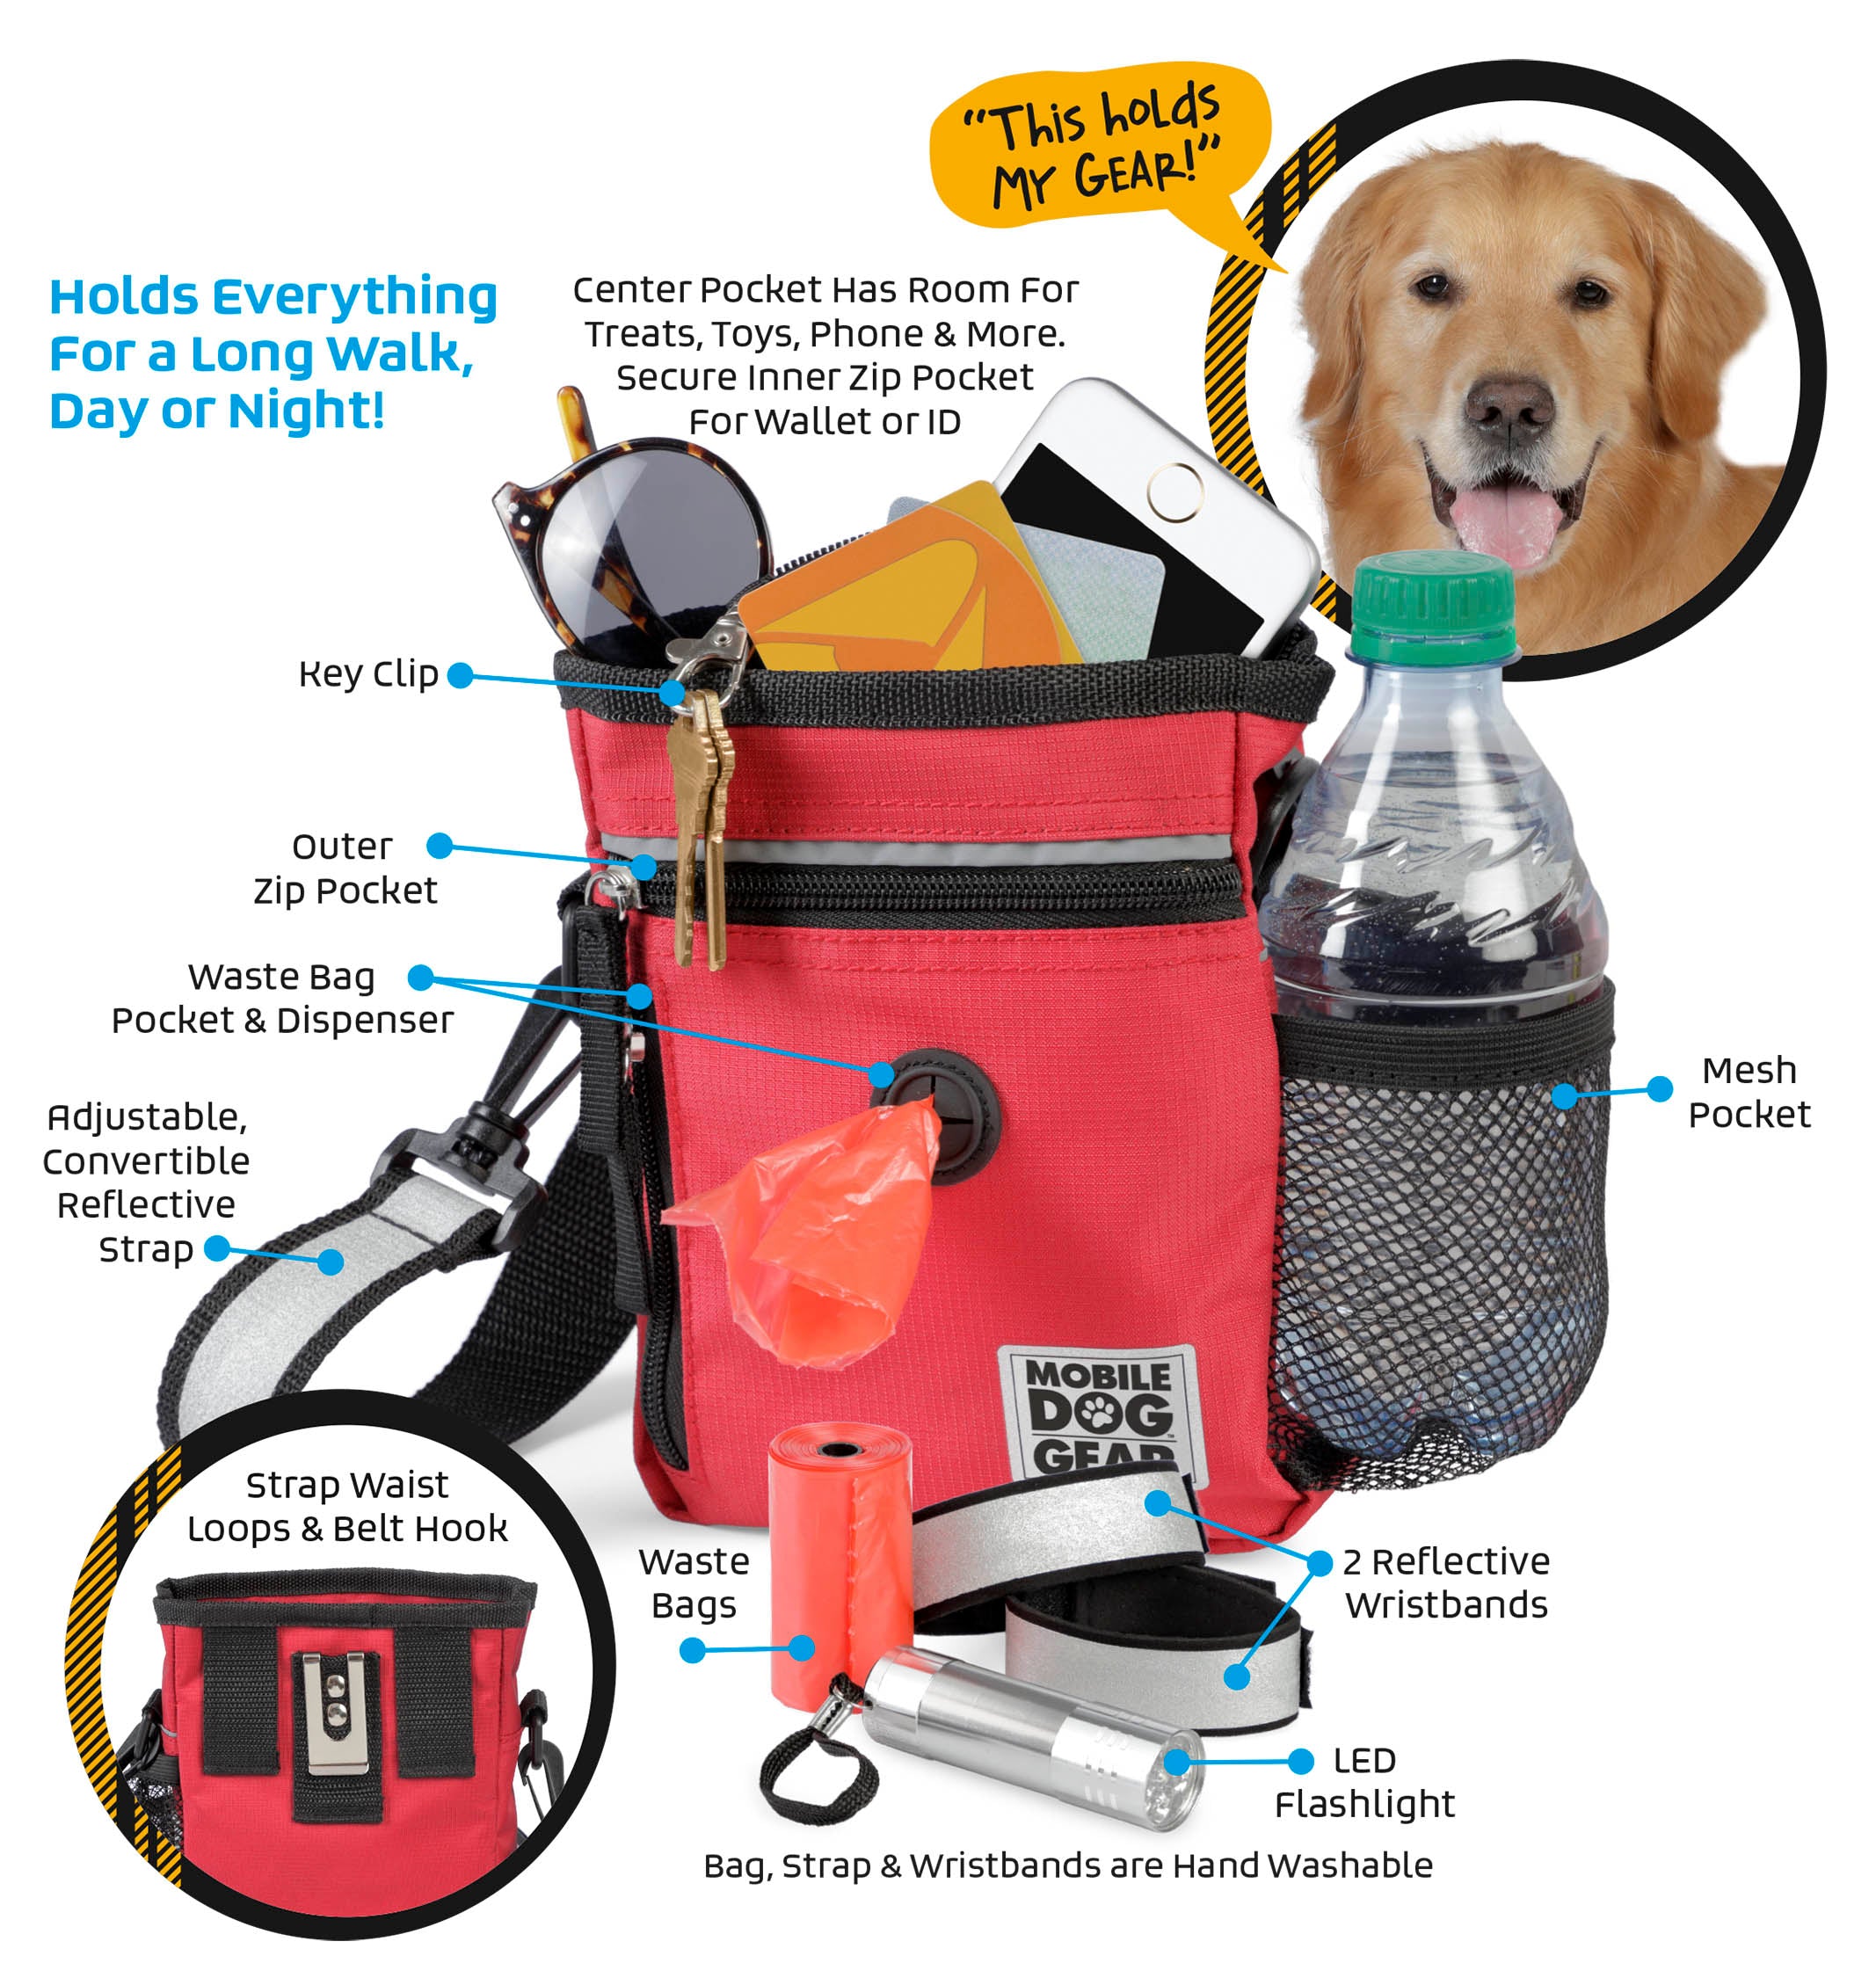 Bundle: ODG Day/Night Walking Bag (Black), ODG Day Away Tote Bag TM (Black) and ODG Week Away Bag TM (Med/Lg Dogs) (Black)